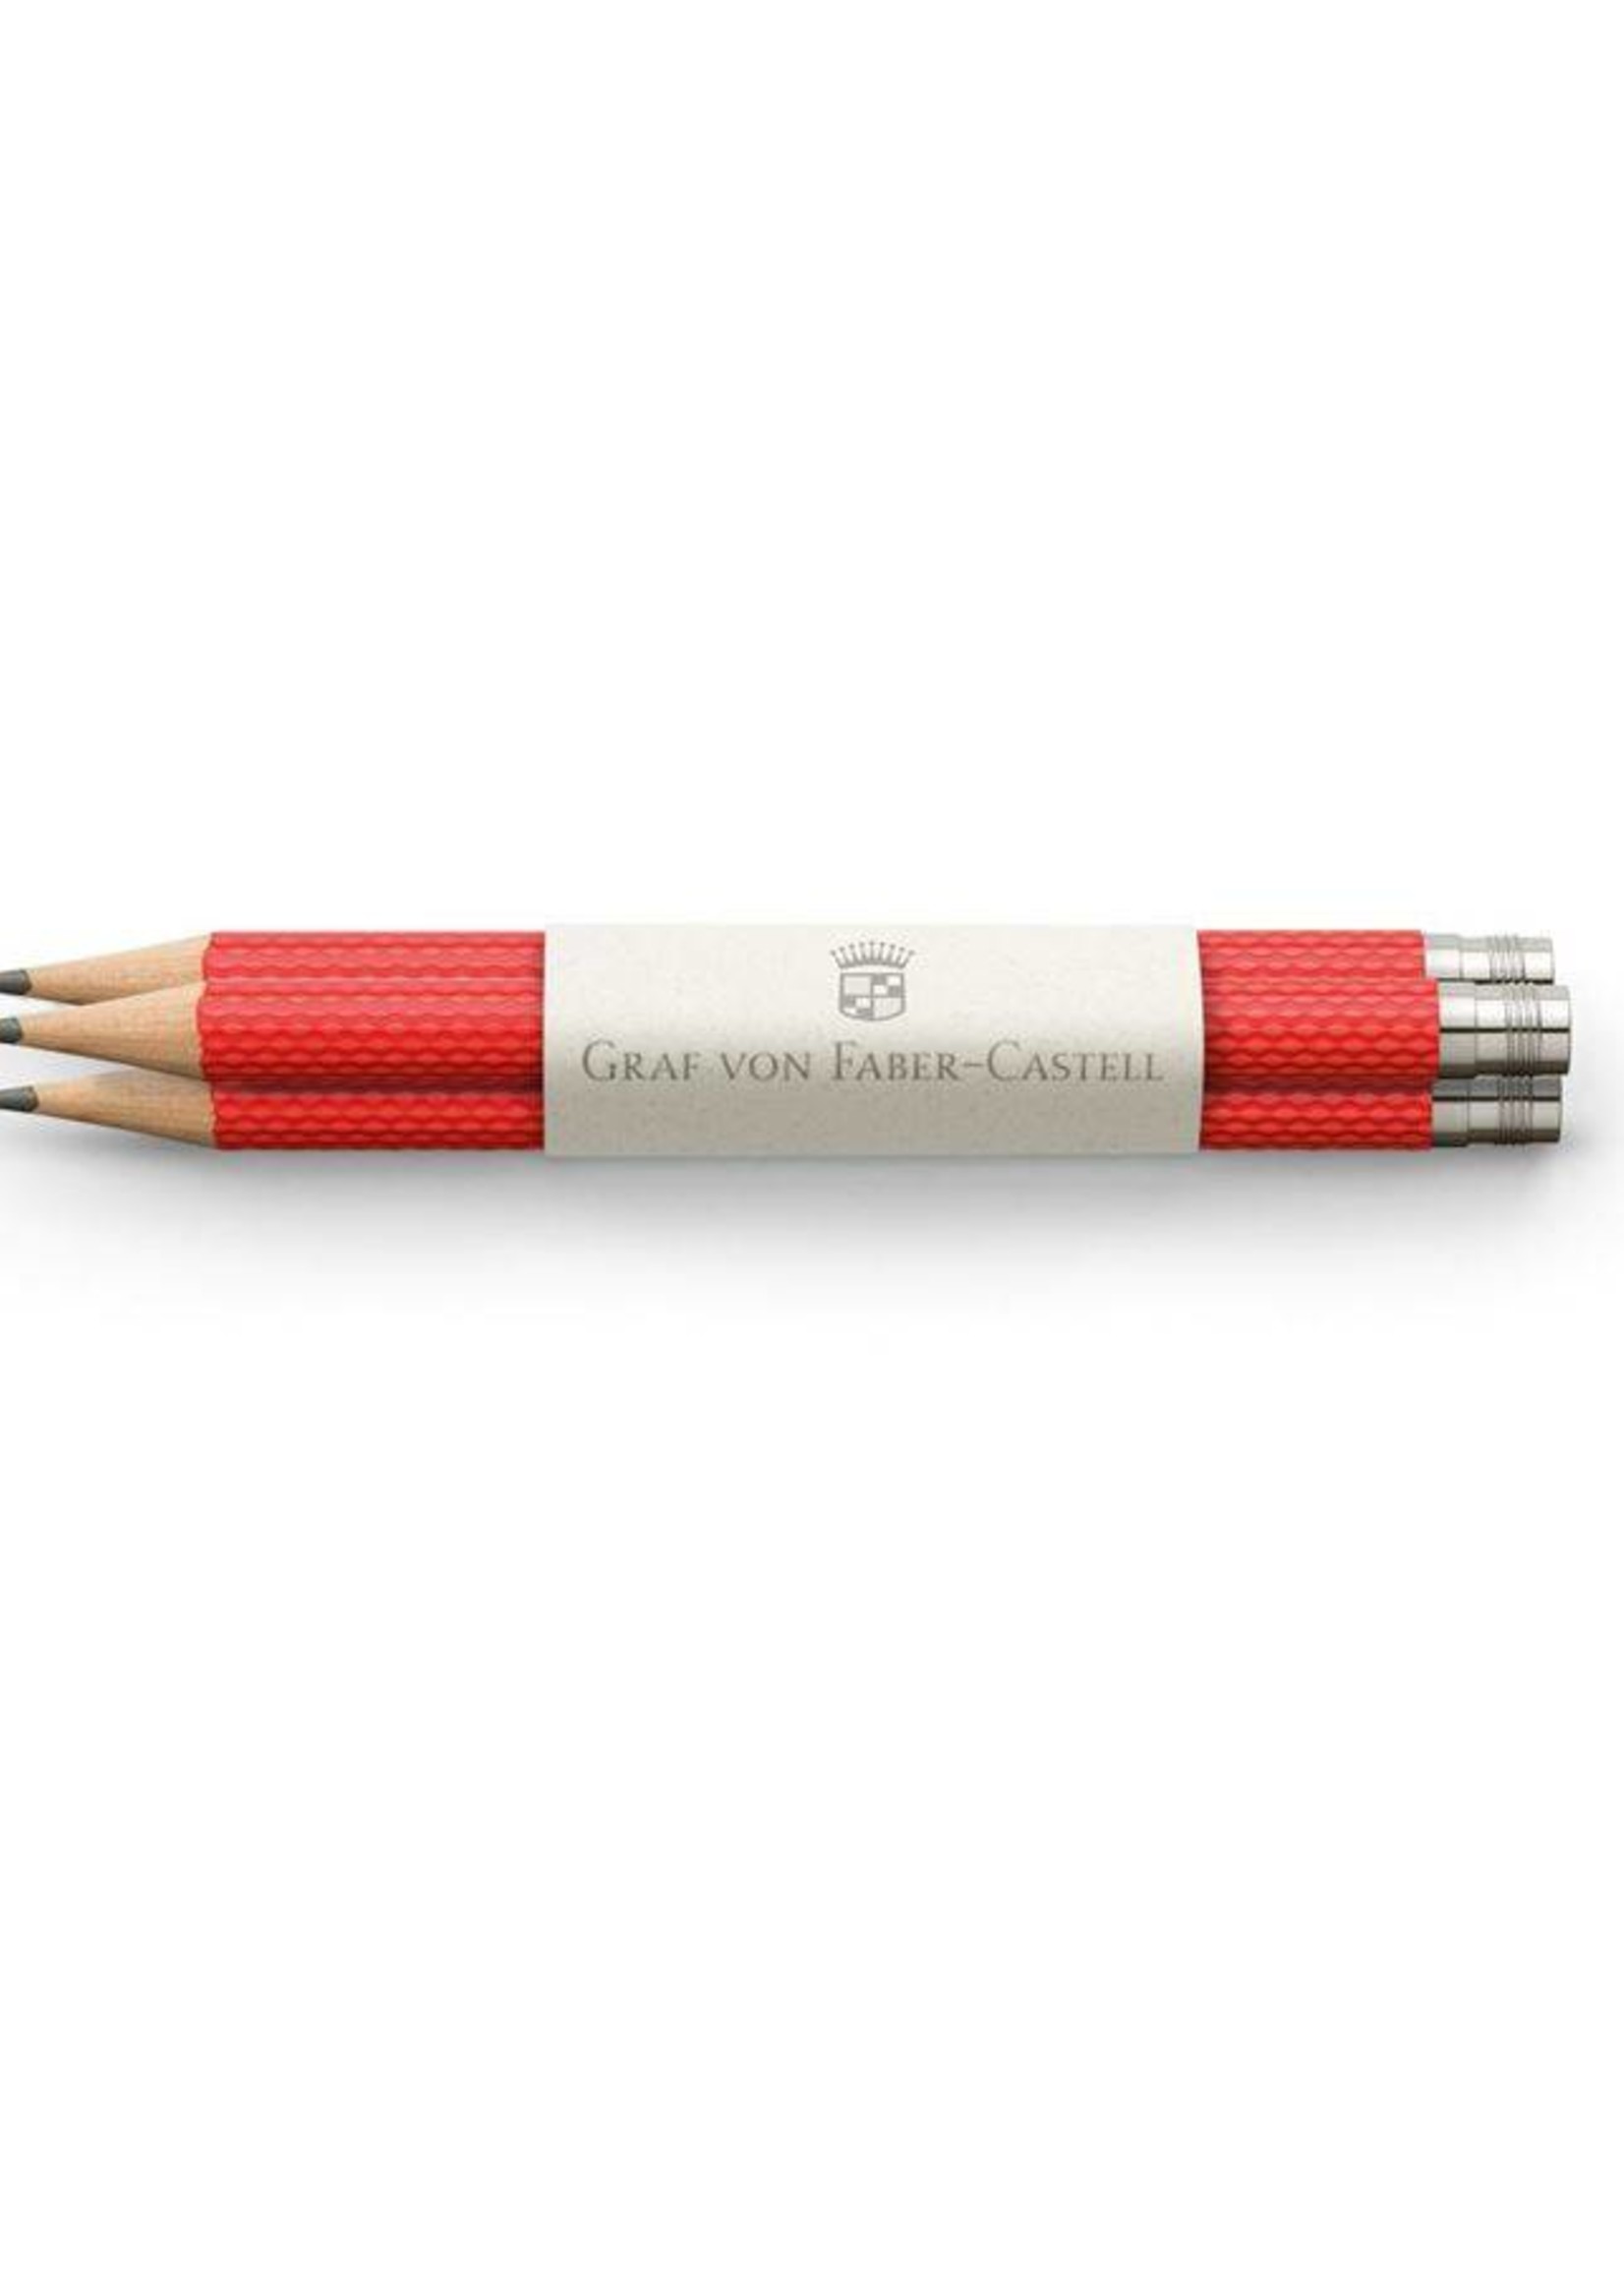 Graf von Faber-Castell GvFC Taschenbleistift Farbwelt India Red 3Stkfür Perfekten Bleistift